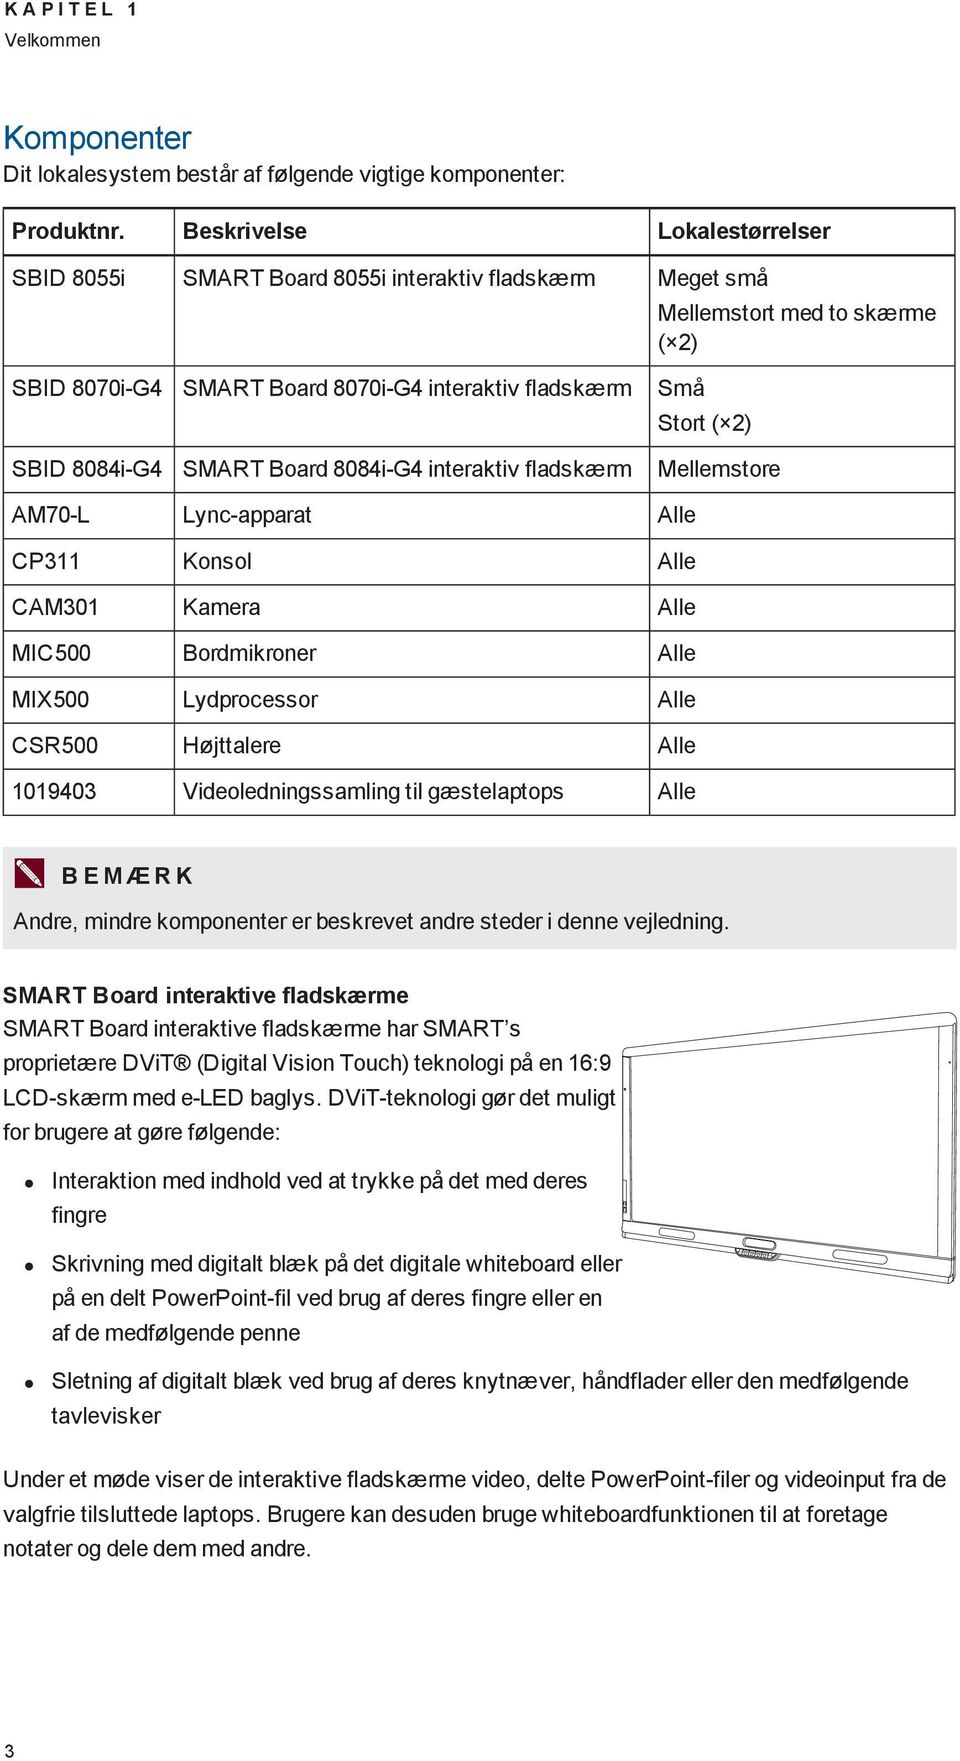 8084i-G4 SMART Board 8084i-G4 interaktiv fladskærm Mellemstore AM70-L Lync-apparat Alle CP311 Konsol Alle CAM301 Kamera Alle MIC500 Bordmikroner Alle MIX500 Lydprocessor Alle CSR500 Højttalere Alle